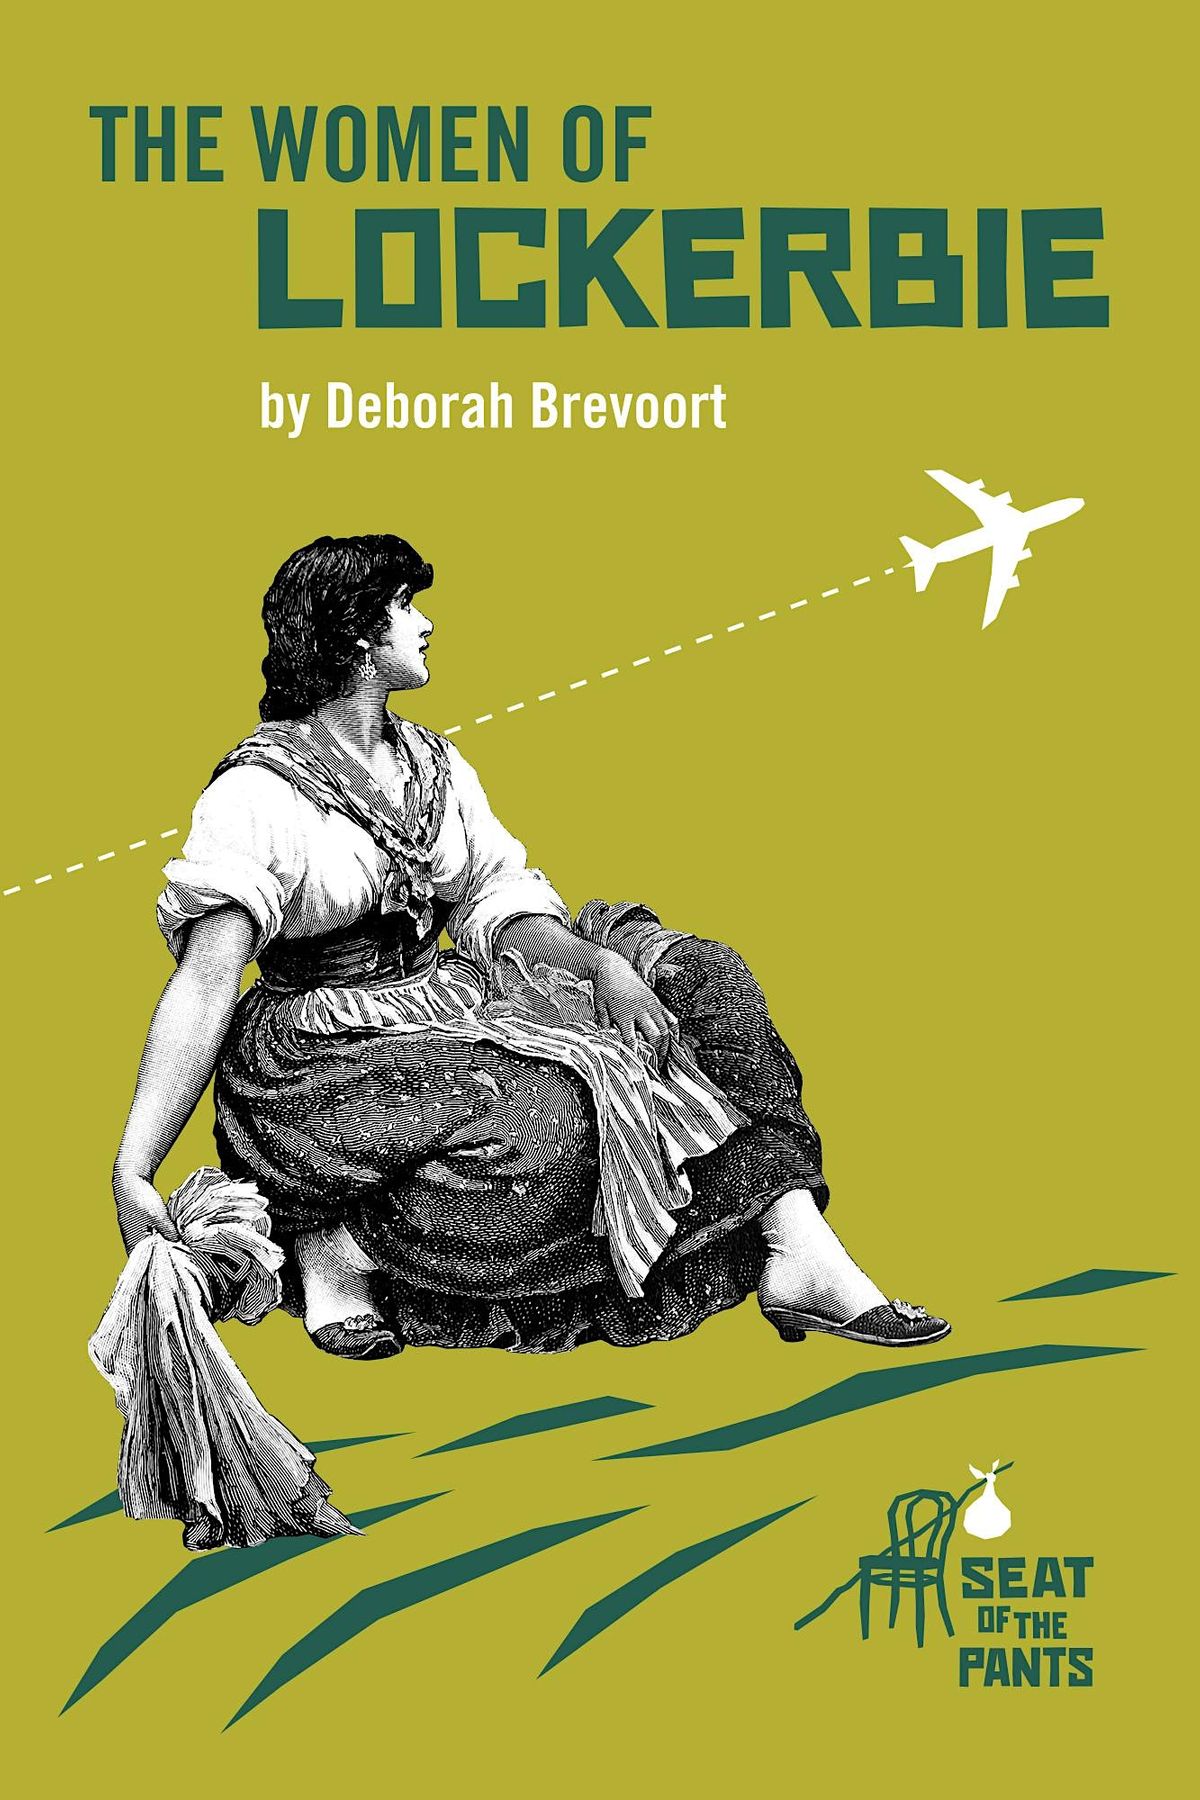 THE WOMEN OF LOCKERBIE, by Deborah Brevoort